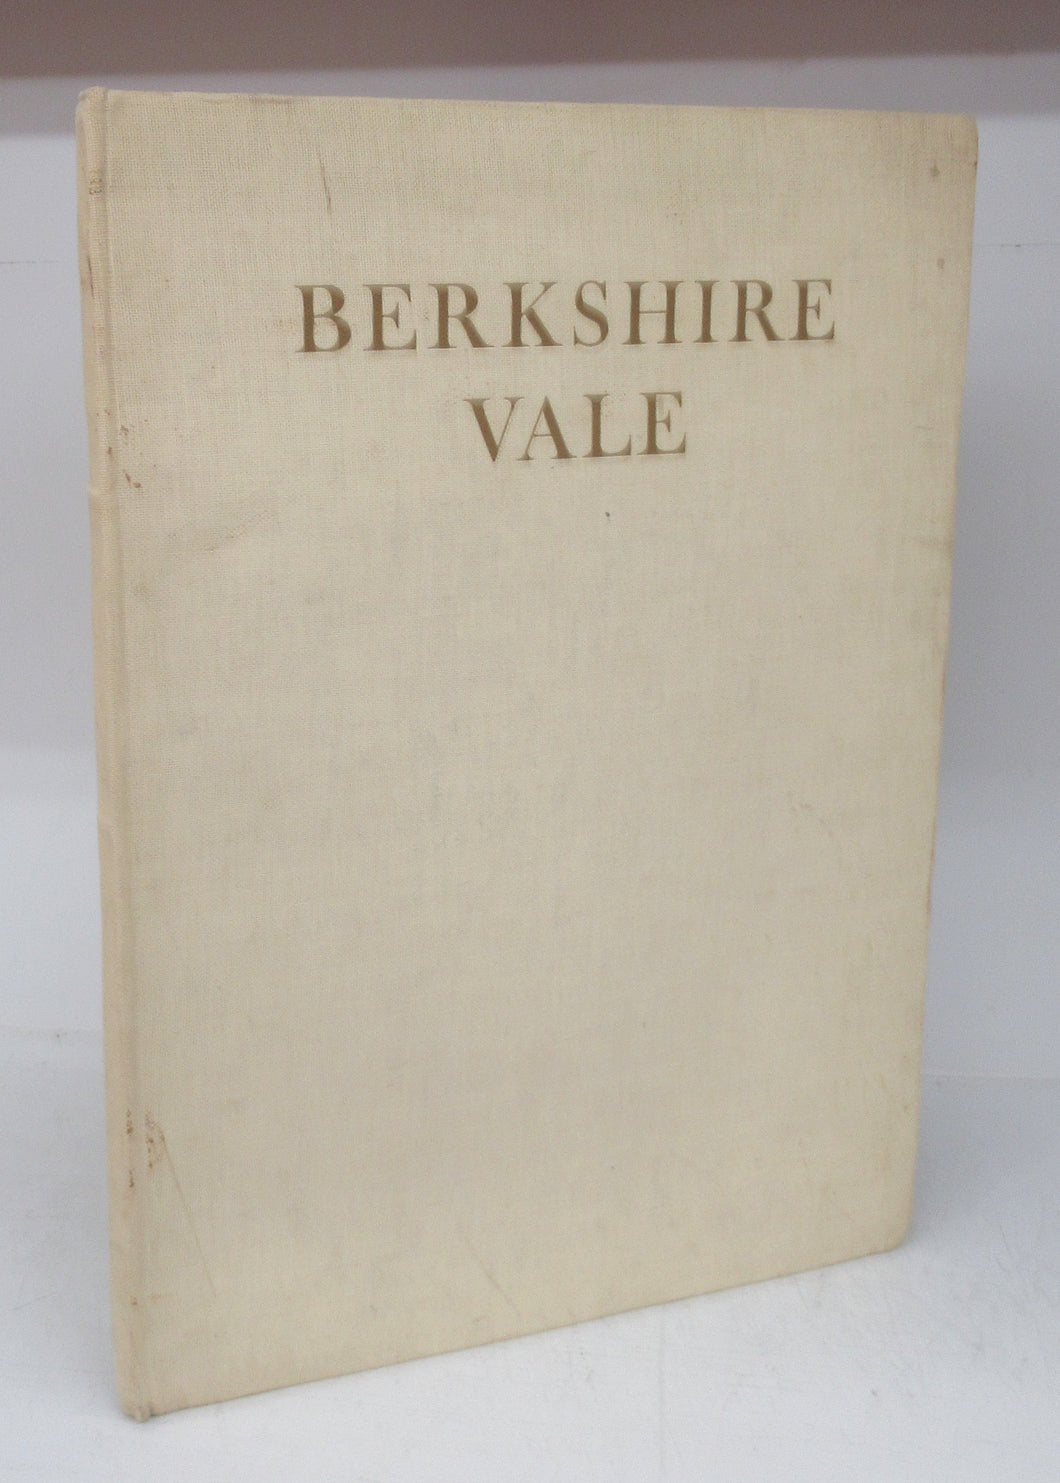 Berkshire Vale: Poems by Wilfrid Howe-Nurse